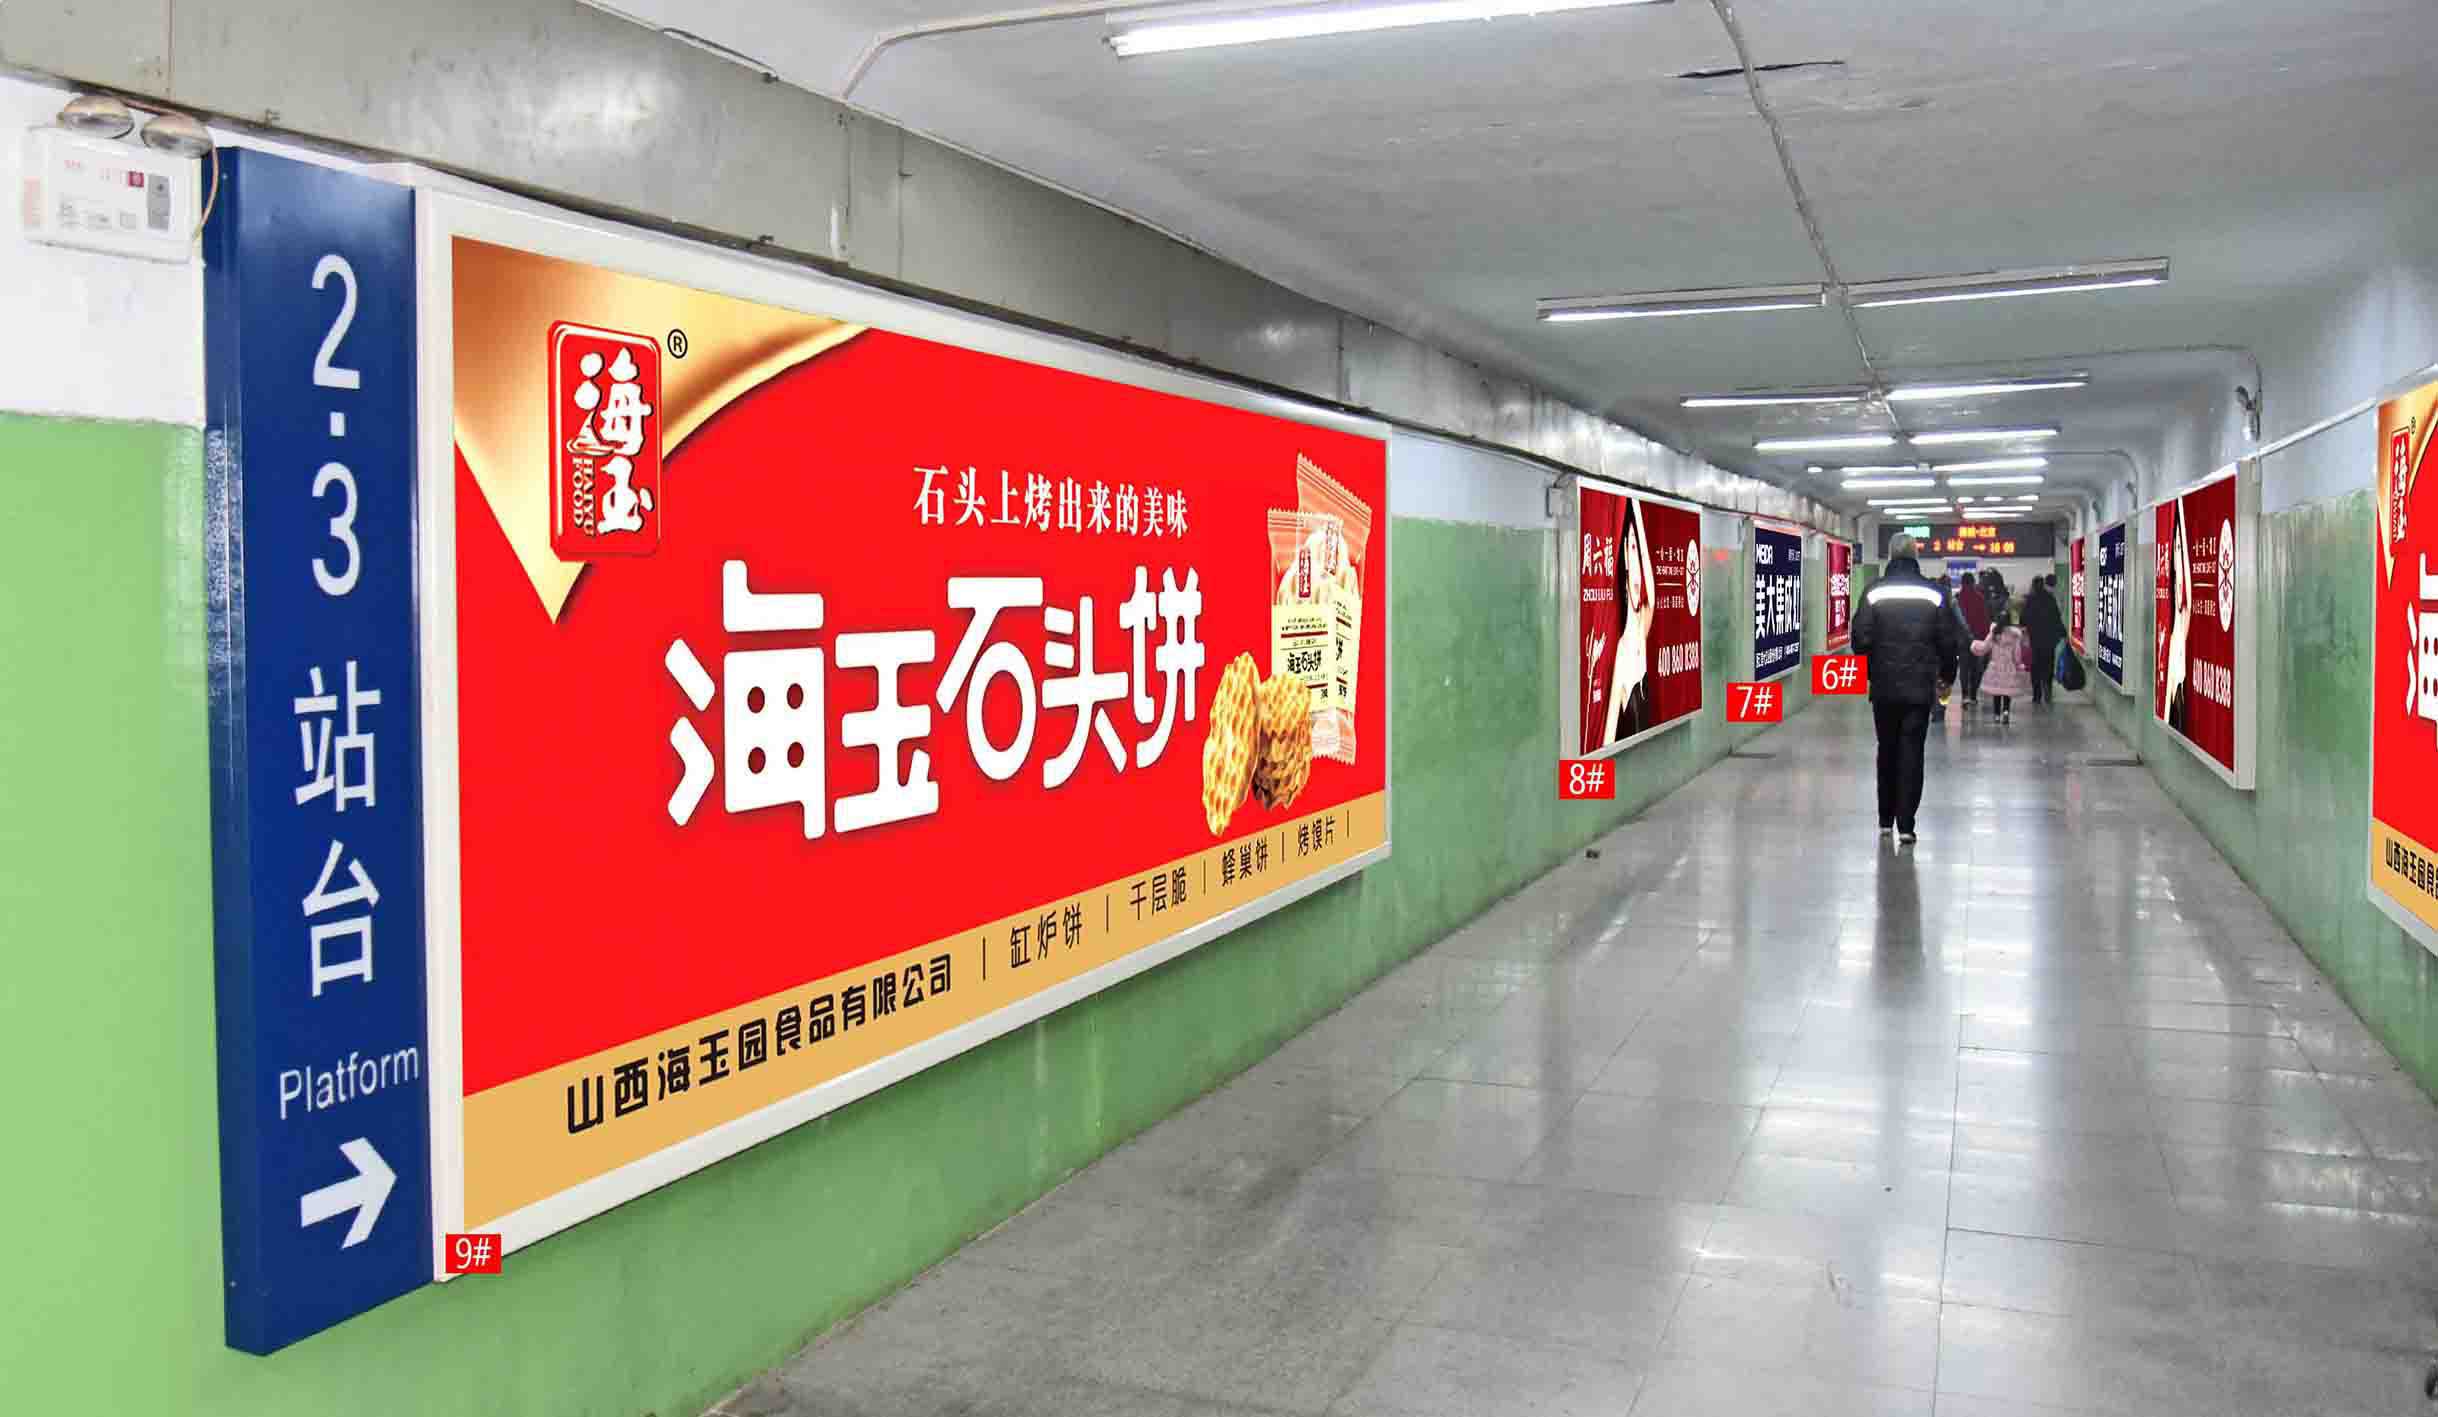 侯马火车站进出口地下通道灯箱广告告6#、7#、8#、9#